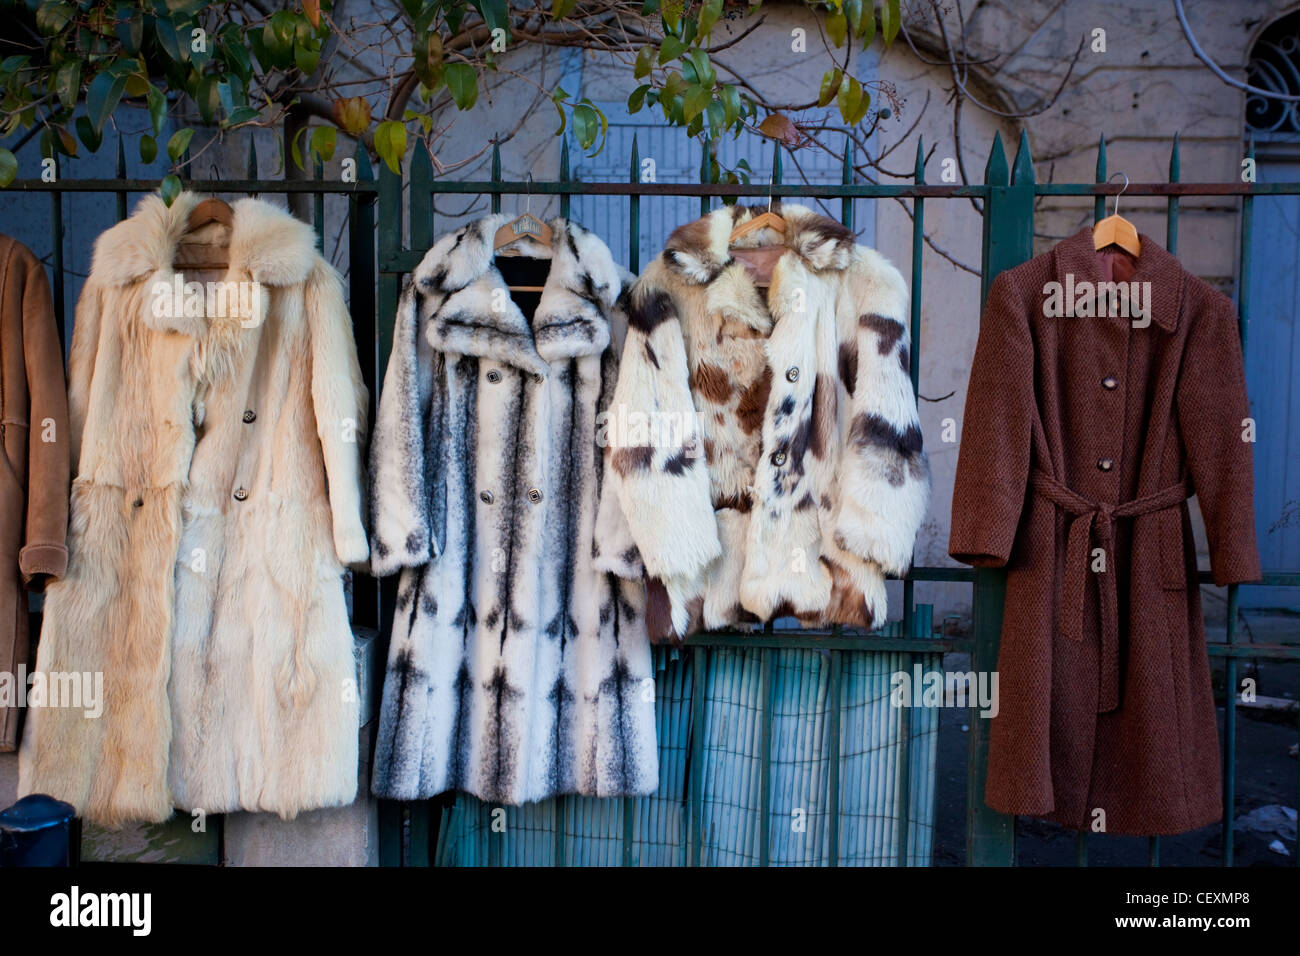 Les manteaux de fourrure pour vendre en place Duburg street market, situé  sur la place de la Basilique St Michel, Bordeaux, France Photo Stock - Alamy